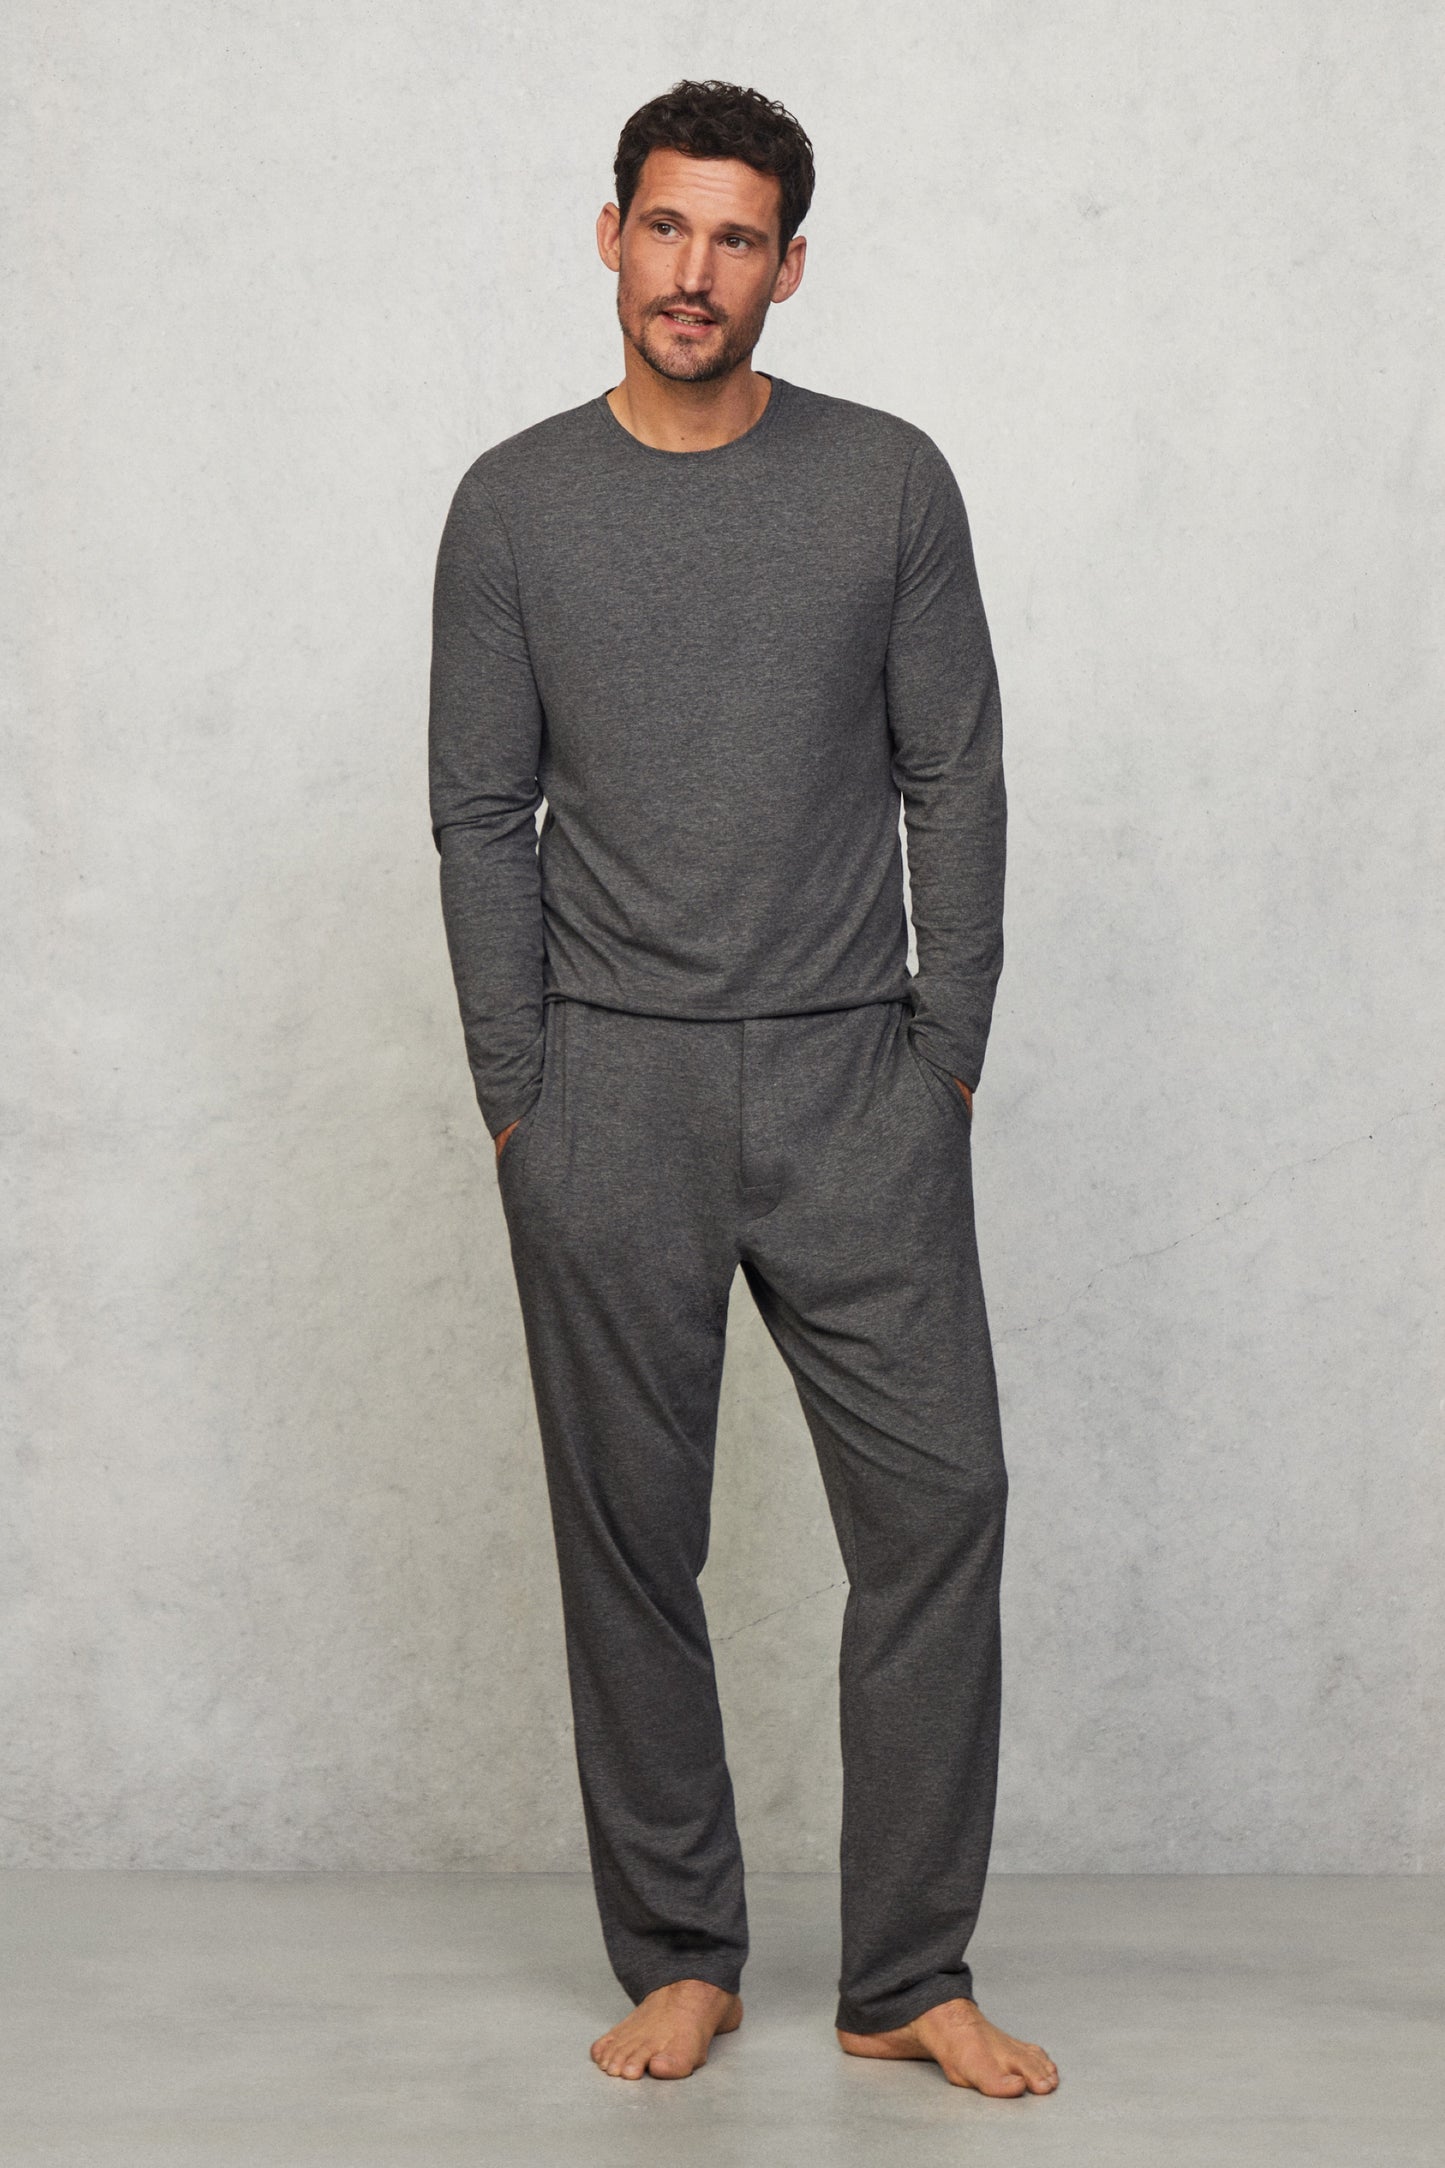 Hackett x Wellwear Premium Pyjama Tee - Mid Grey Marl | David Gandy ...